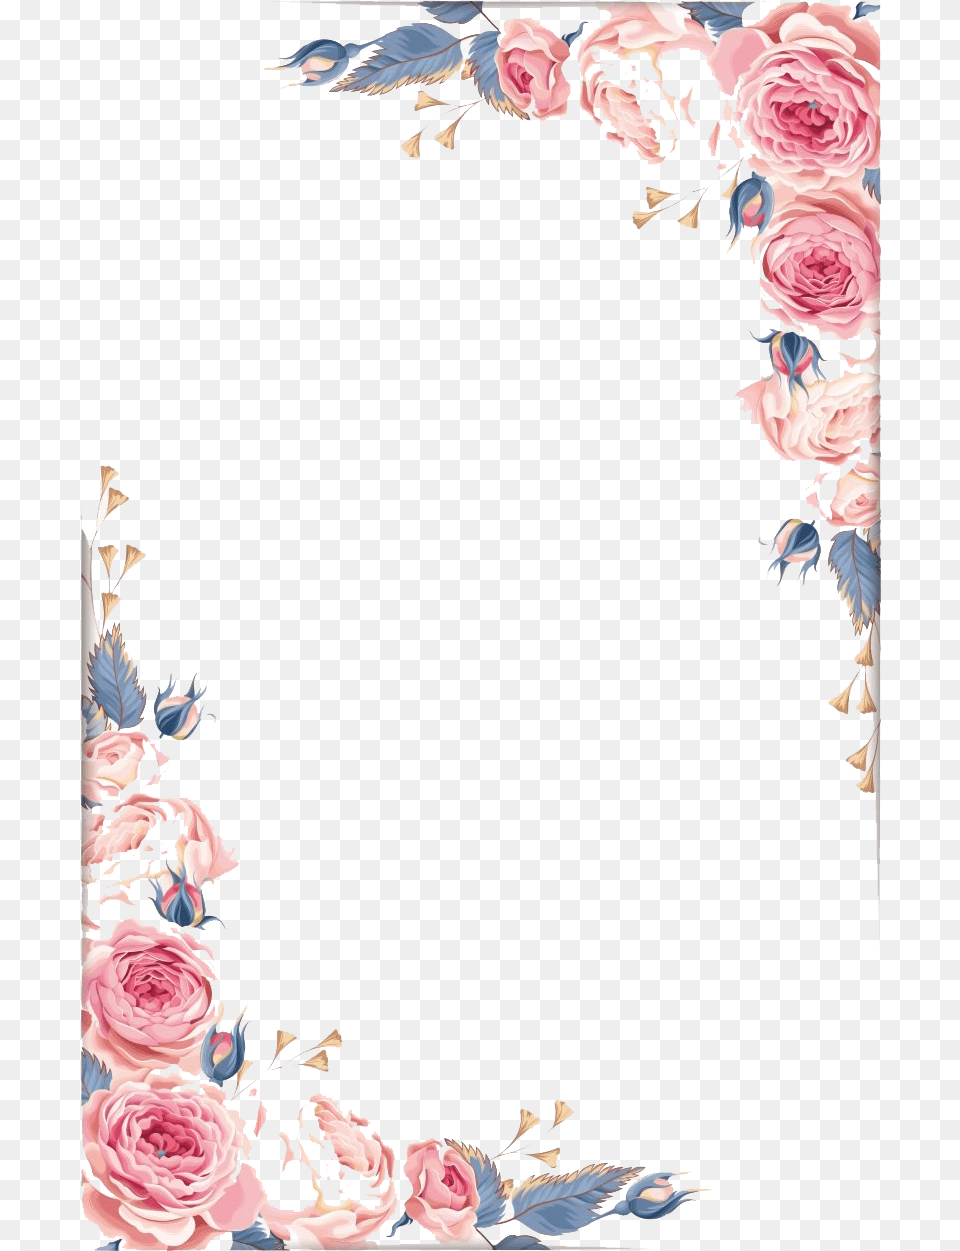 Vintage Floral Frame Pink And Gray Floral Border, Rose, Plant, Pattern, Graphics Png Image